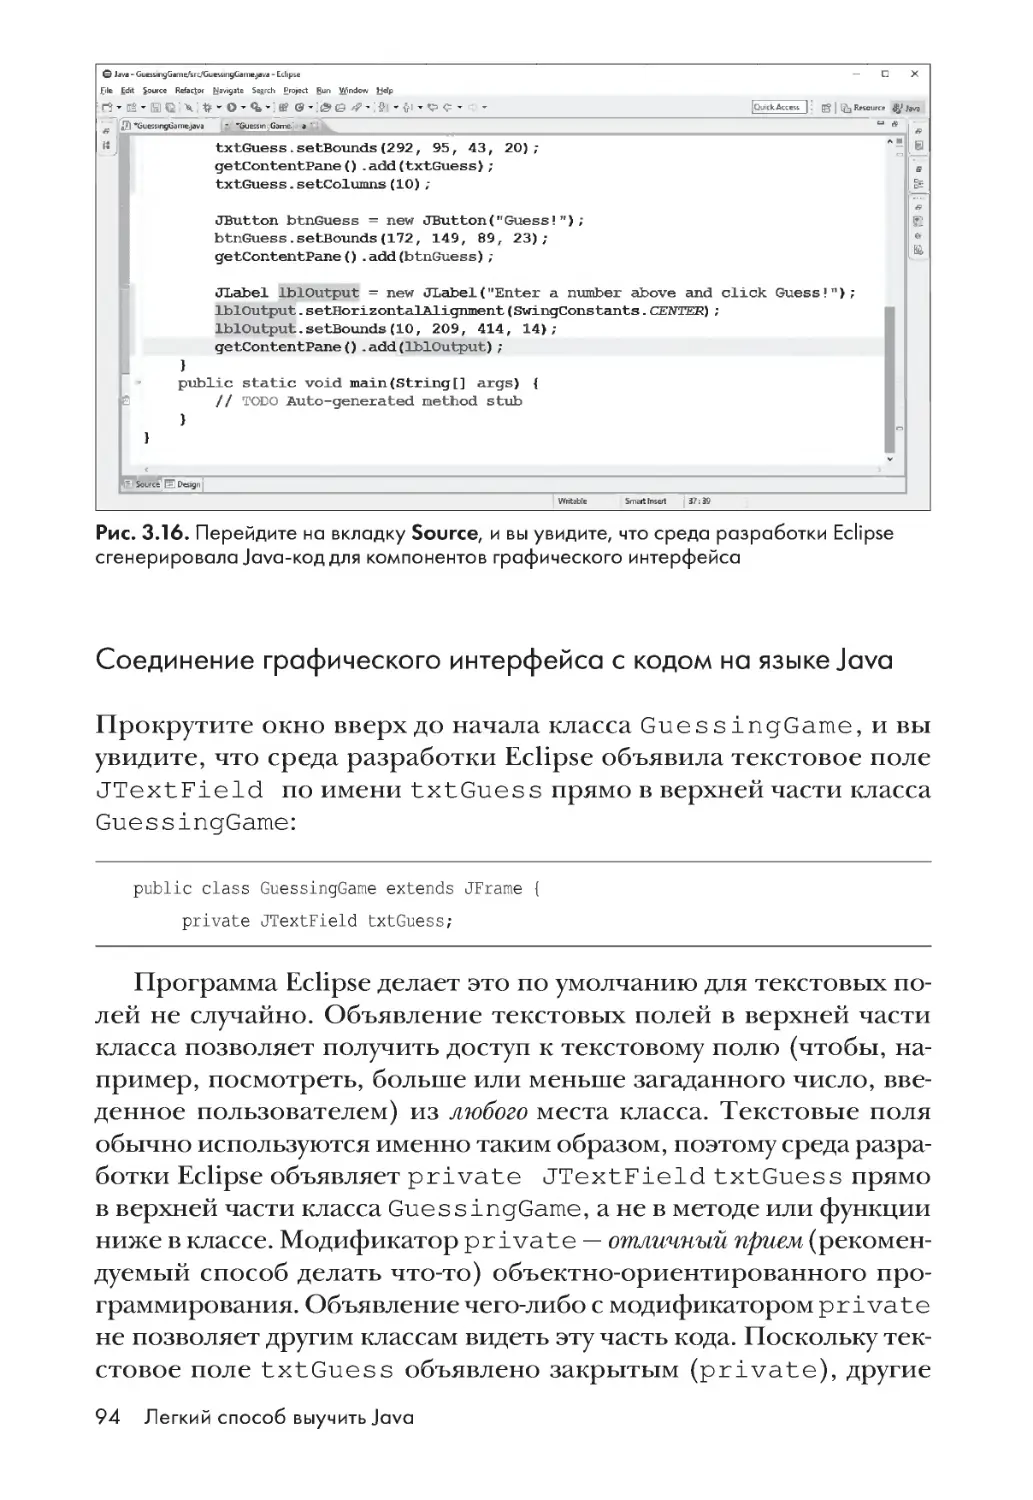 Соединение графического интерфейса с кодом на языке Java